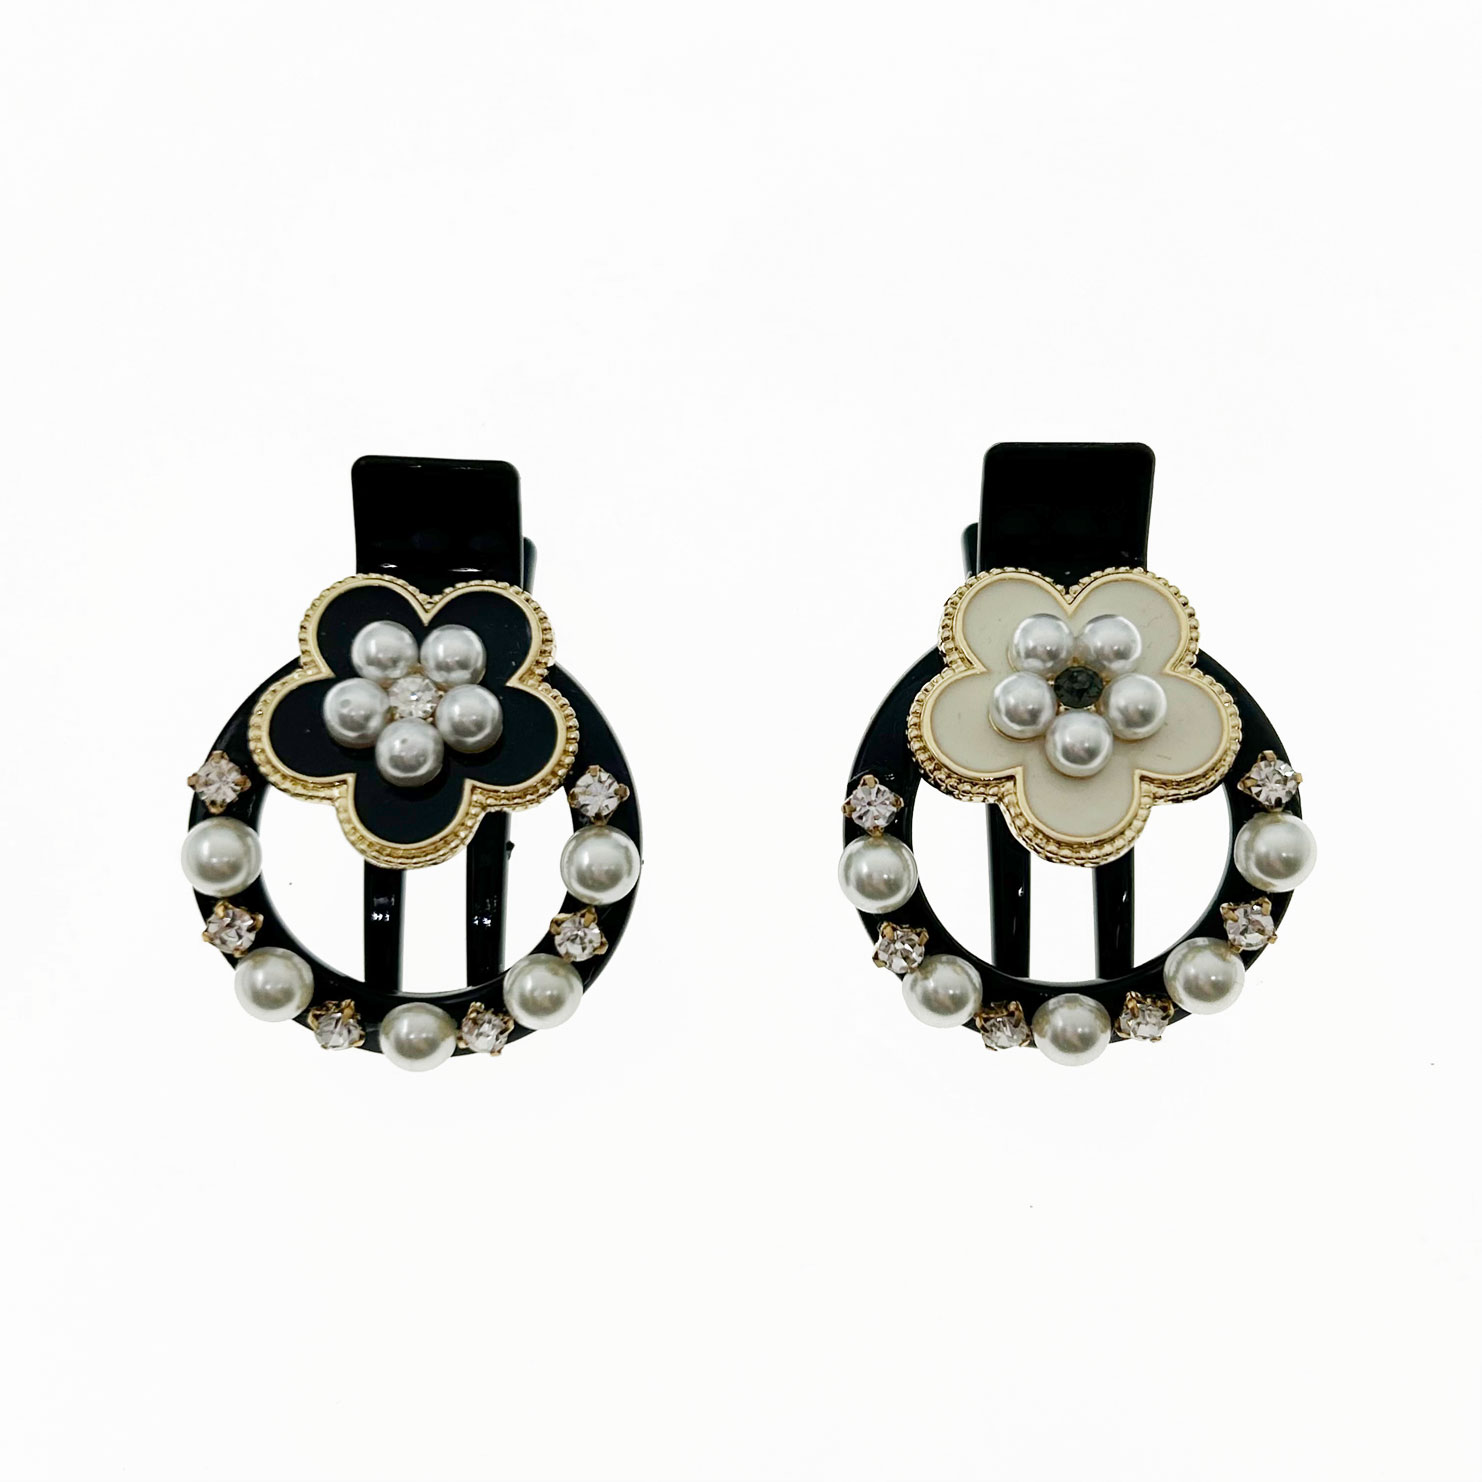 韓國 水鑽 珍珠 花朵 造型 雙色 壓夾 髮夾 髮飾